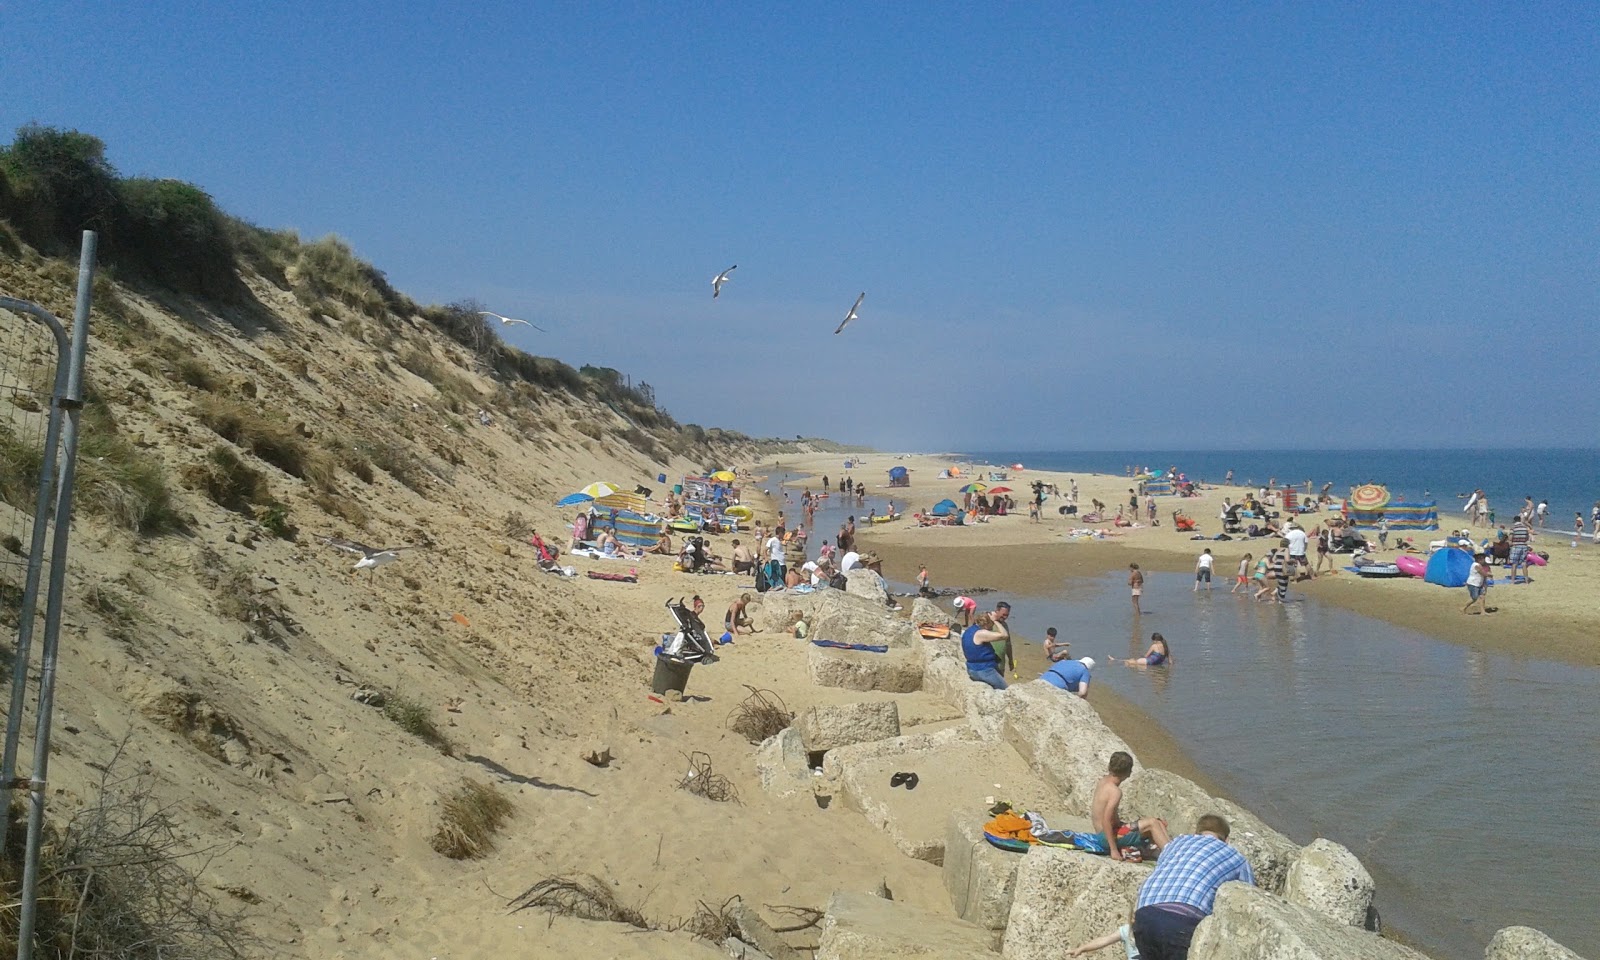 Fotografie cu Hemsby beach cu nivelul de curățenie înalt